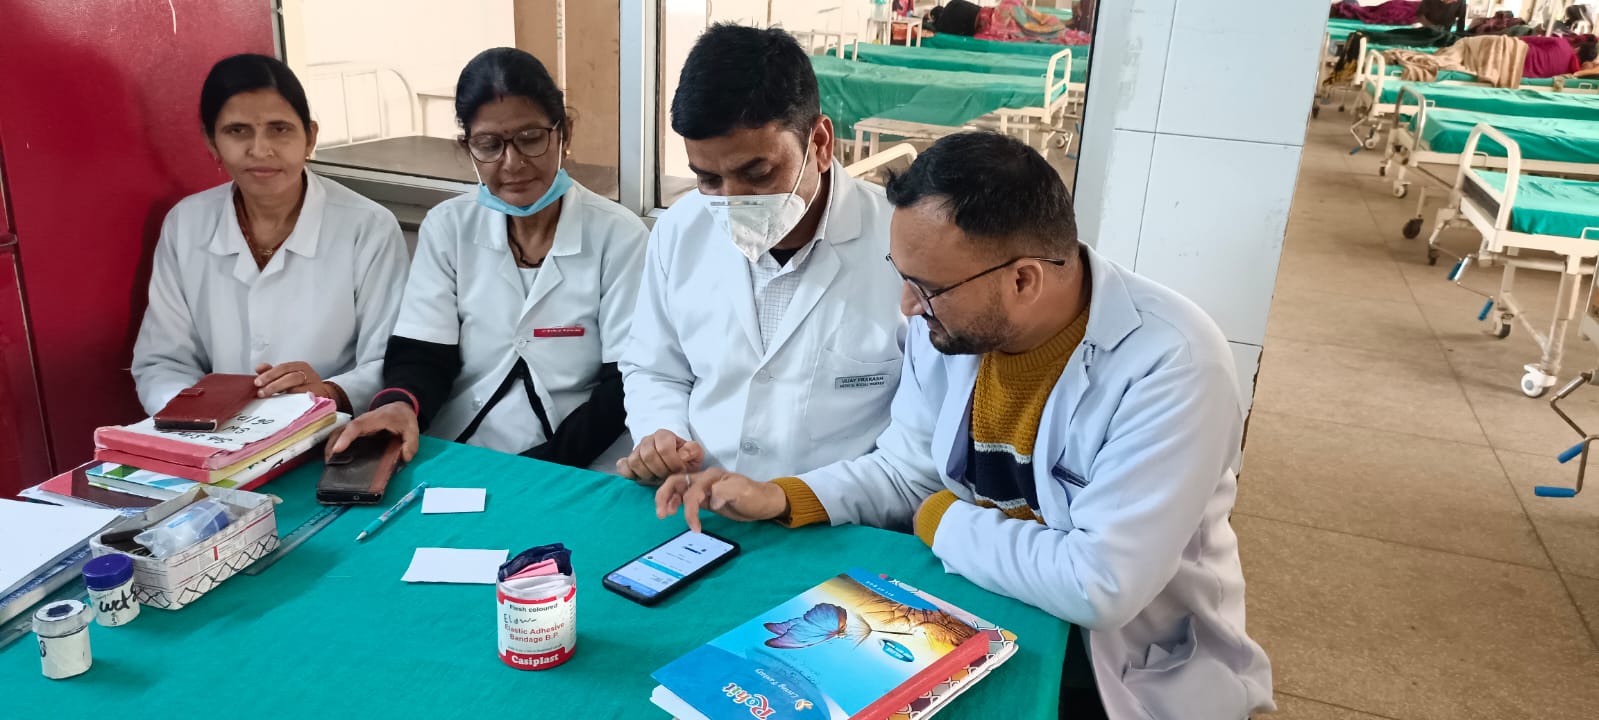 बेस अस्पताल श्रीनगर में सरकार की स्वास्थ्य योजनाओं को पंख दे रहे एमएसडब्ल्यू 